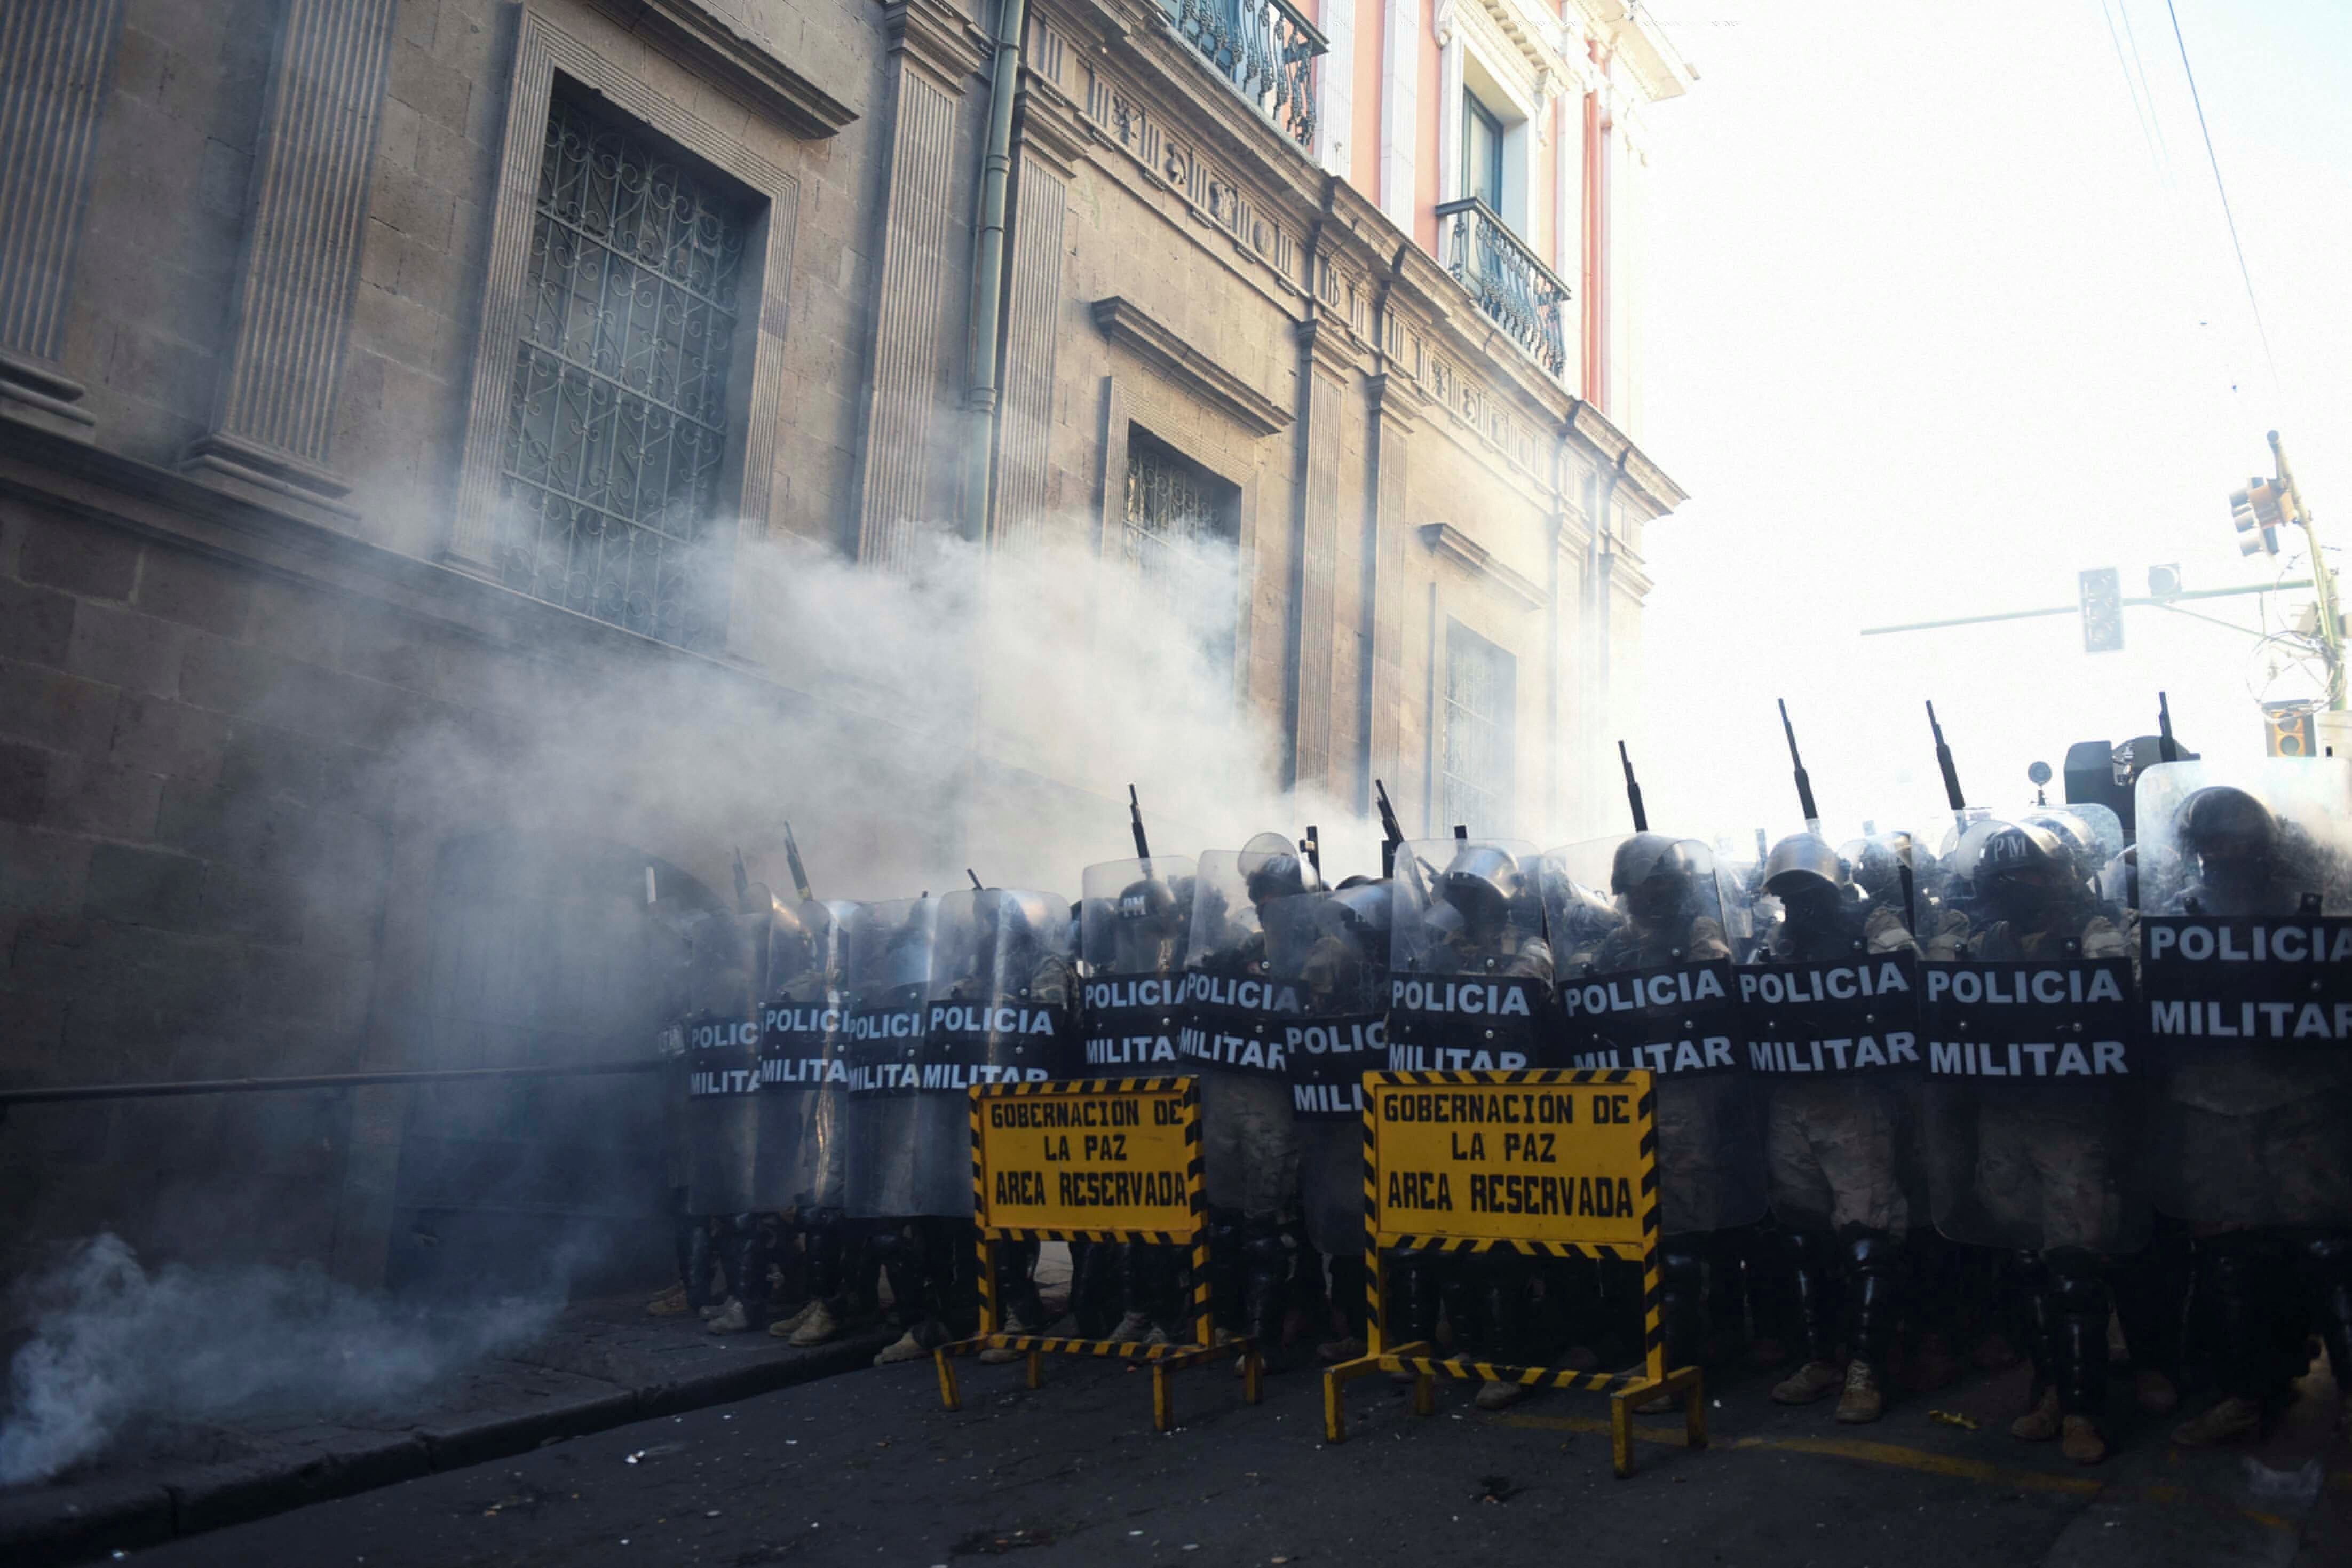 Los uniformados emplearon gases lacrimógenos contra las personas que quisieron acercarse al edificio (REUTERS/Claudia Morales)